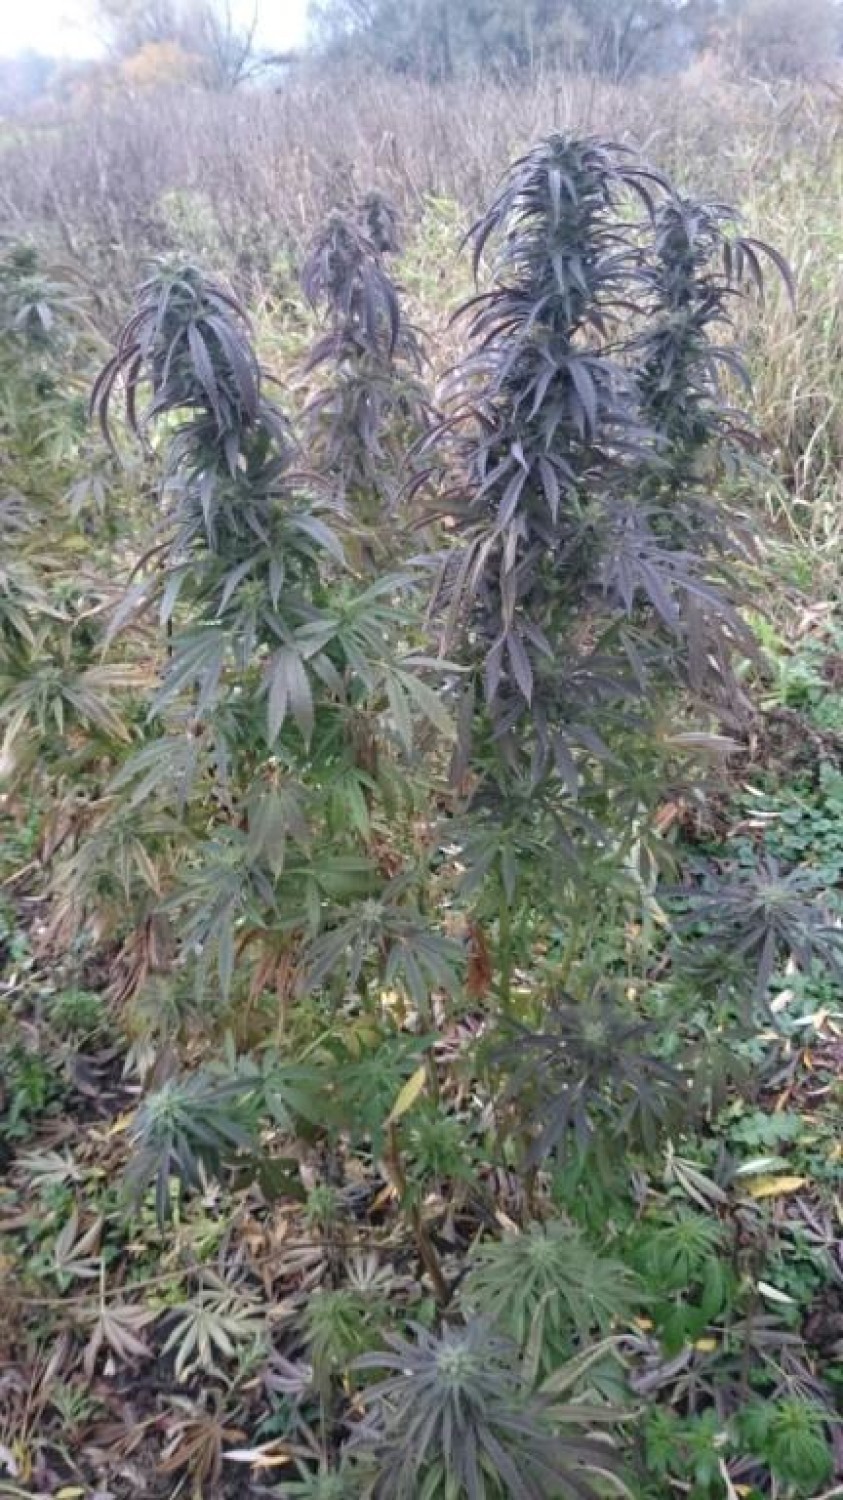 Pół kilograma narkotyków i plantacje marihuany. Zatrzymano dwie osoby